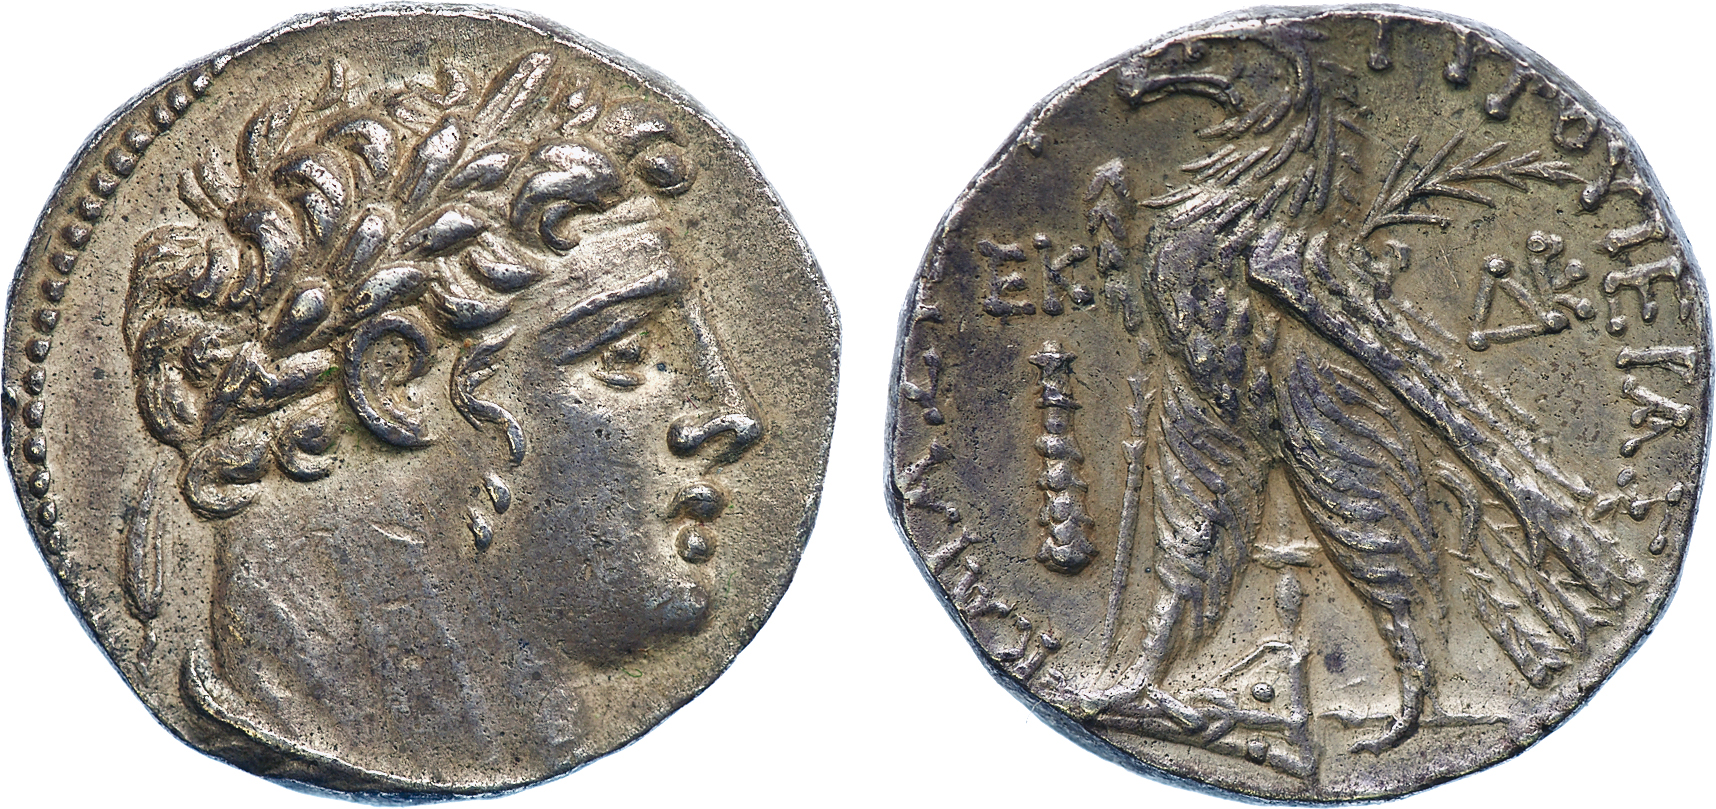 Silver shekel from Tyre